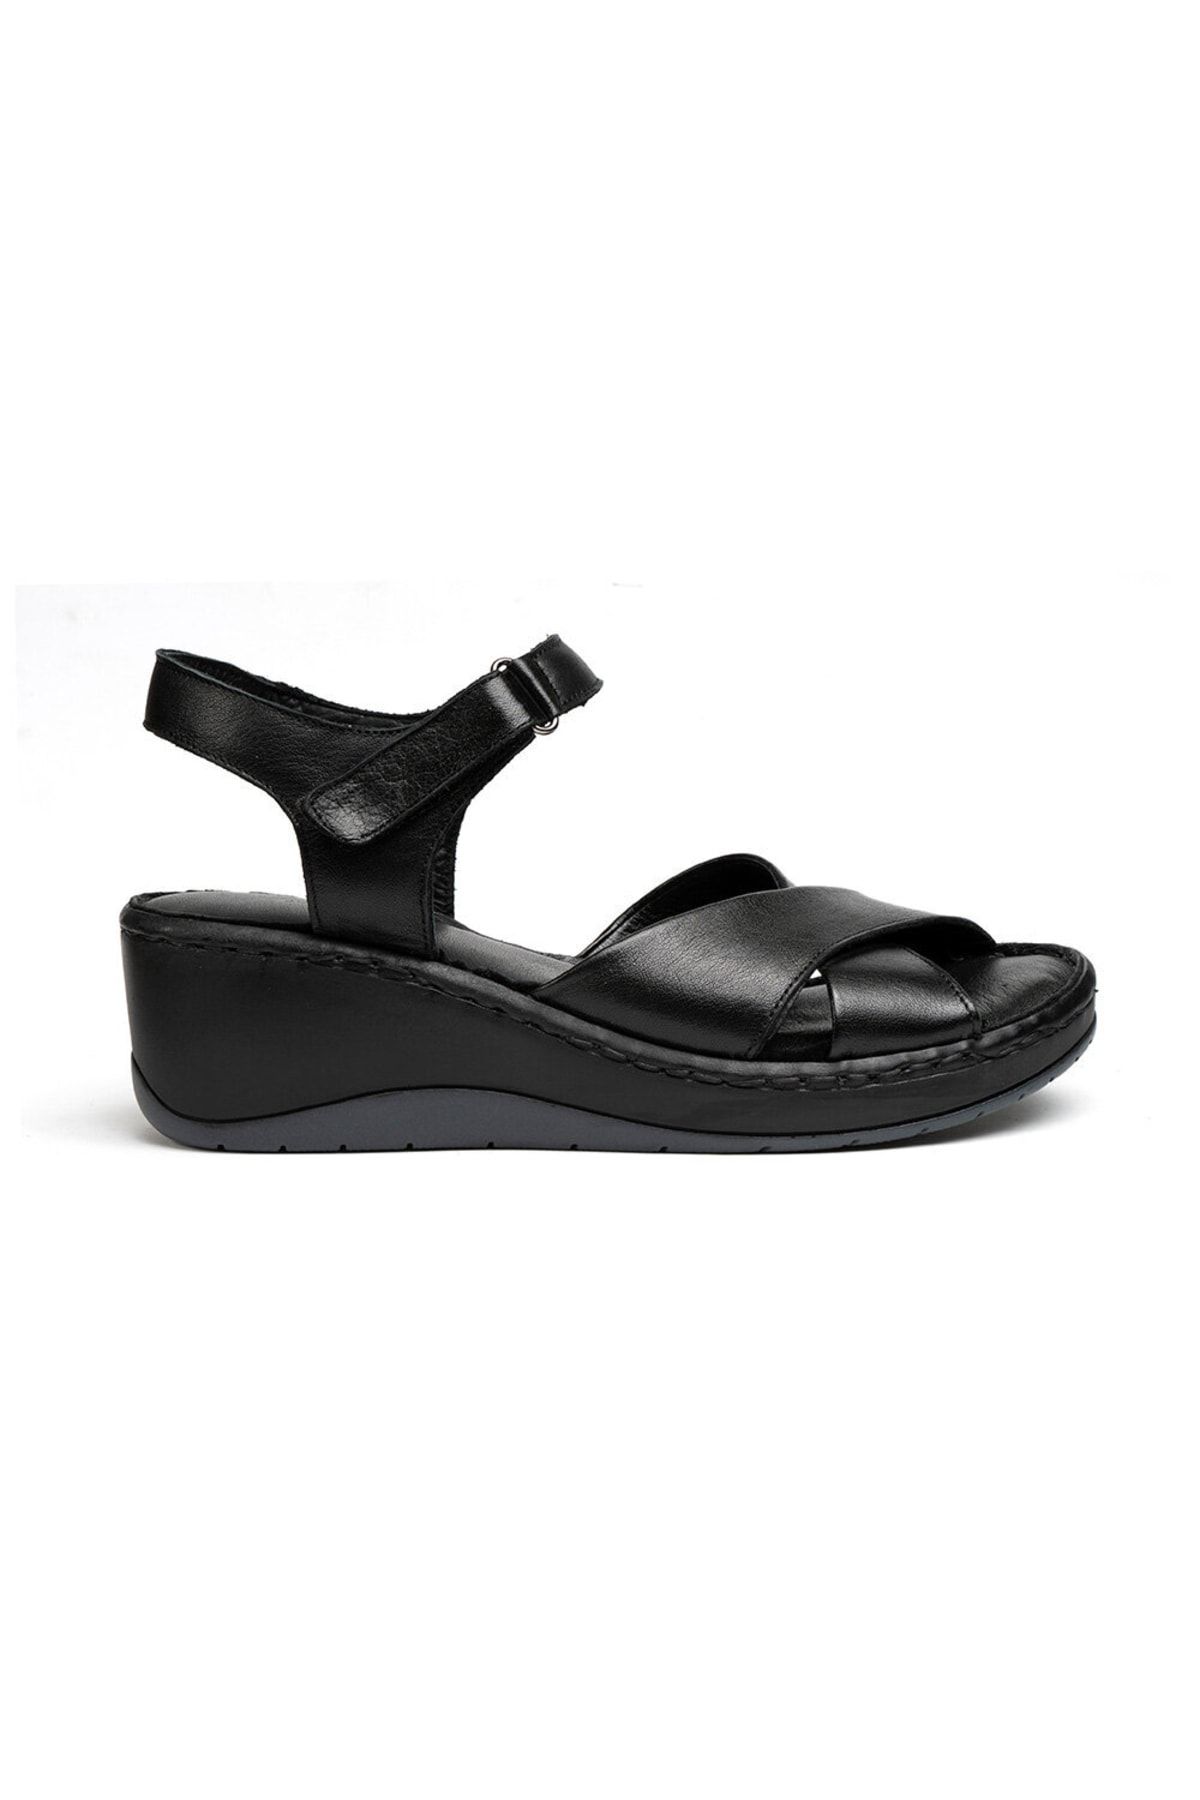 Greyder Kadın Siyah Hakiki Deri Sandalet 2y2fs57907